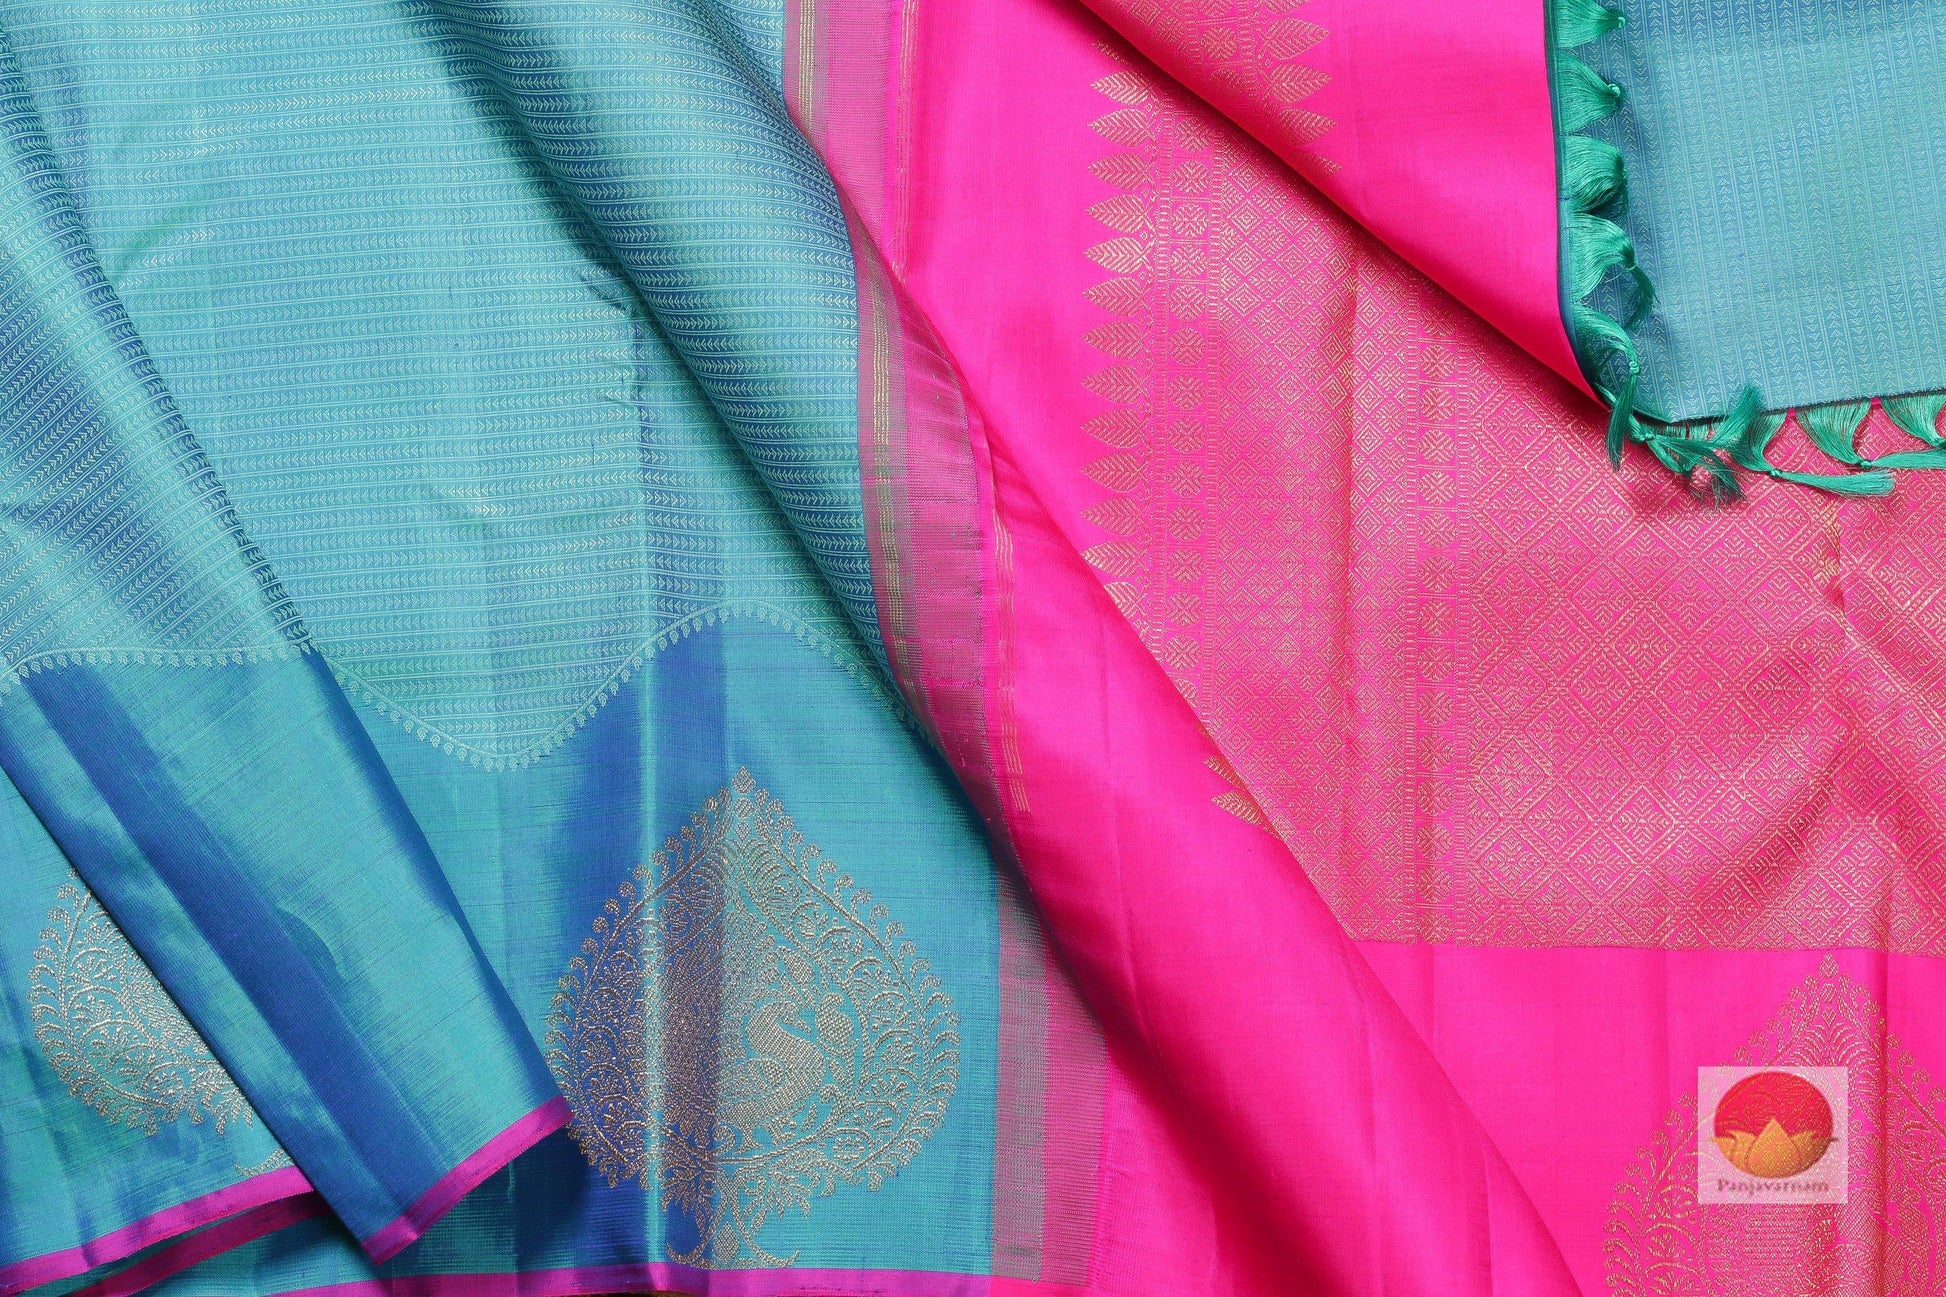 Ananda Blue - Silk Thread Work - Handwoven Pure Silk Kanjivaram Saree - PA SVS 9831 Archives - Silk Sari - Panjavarnam